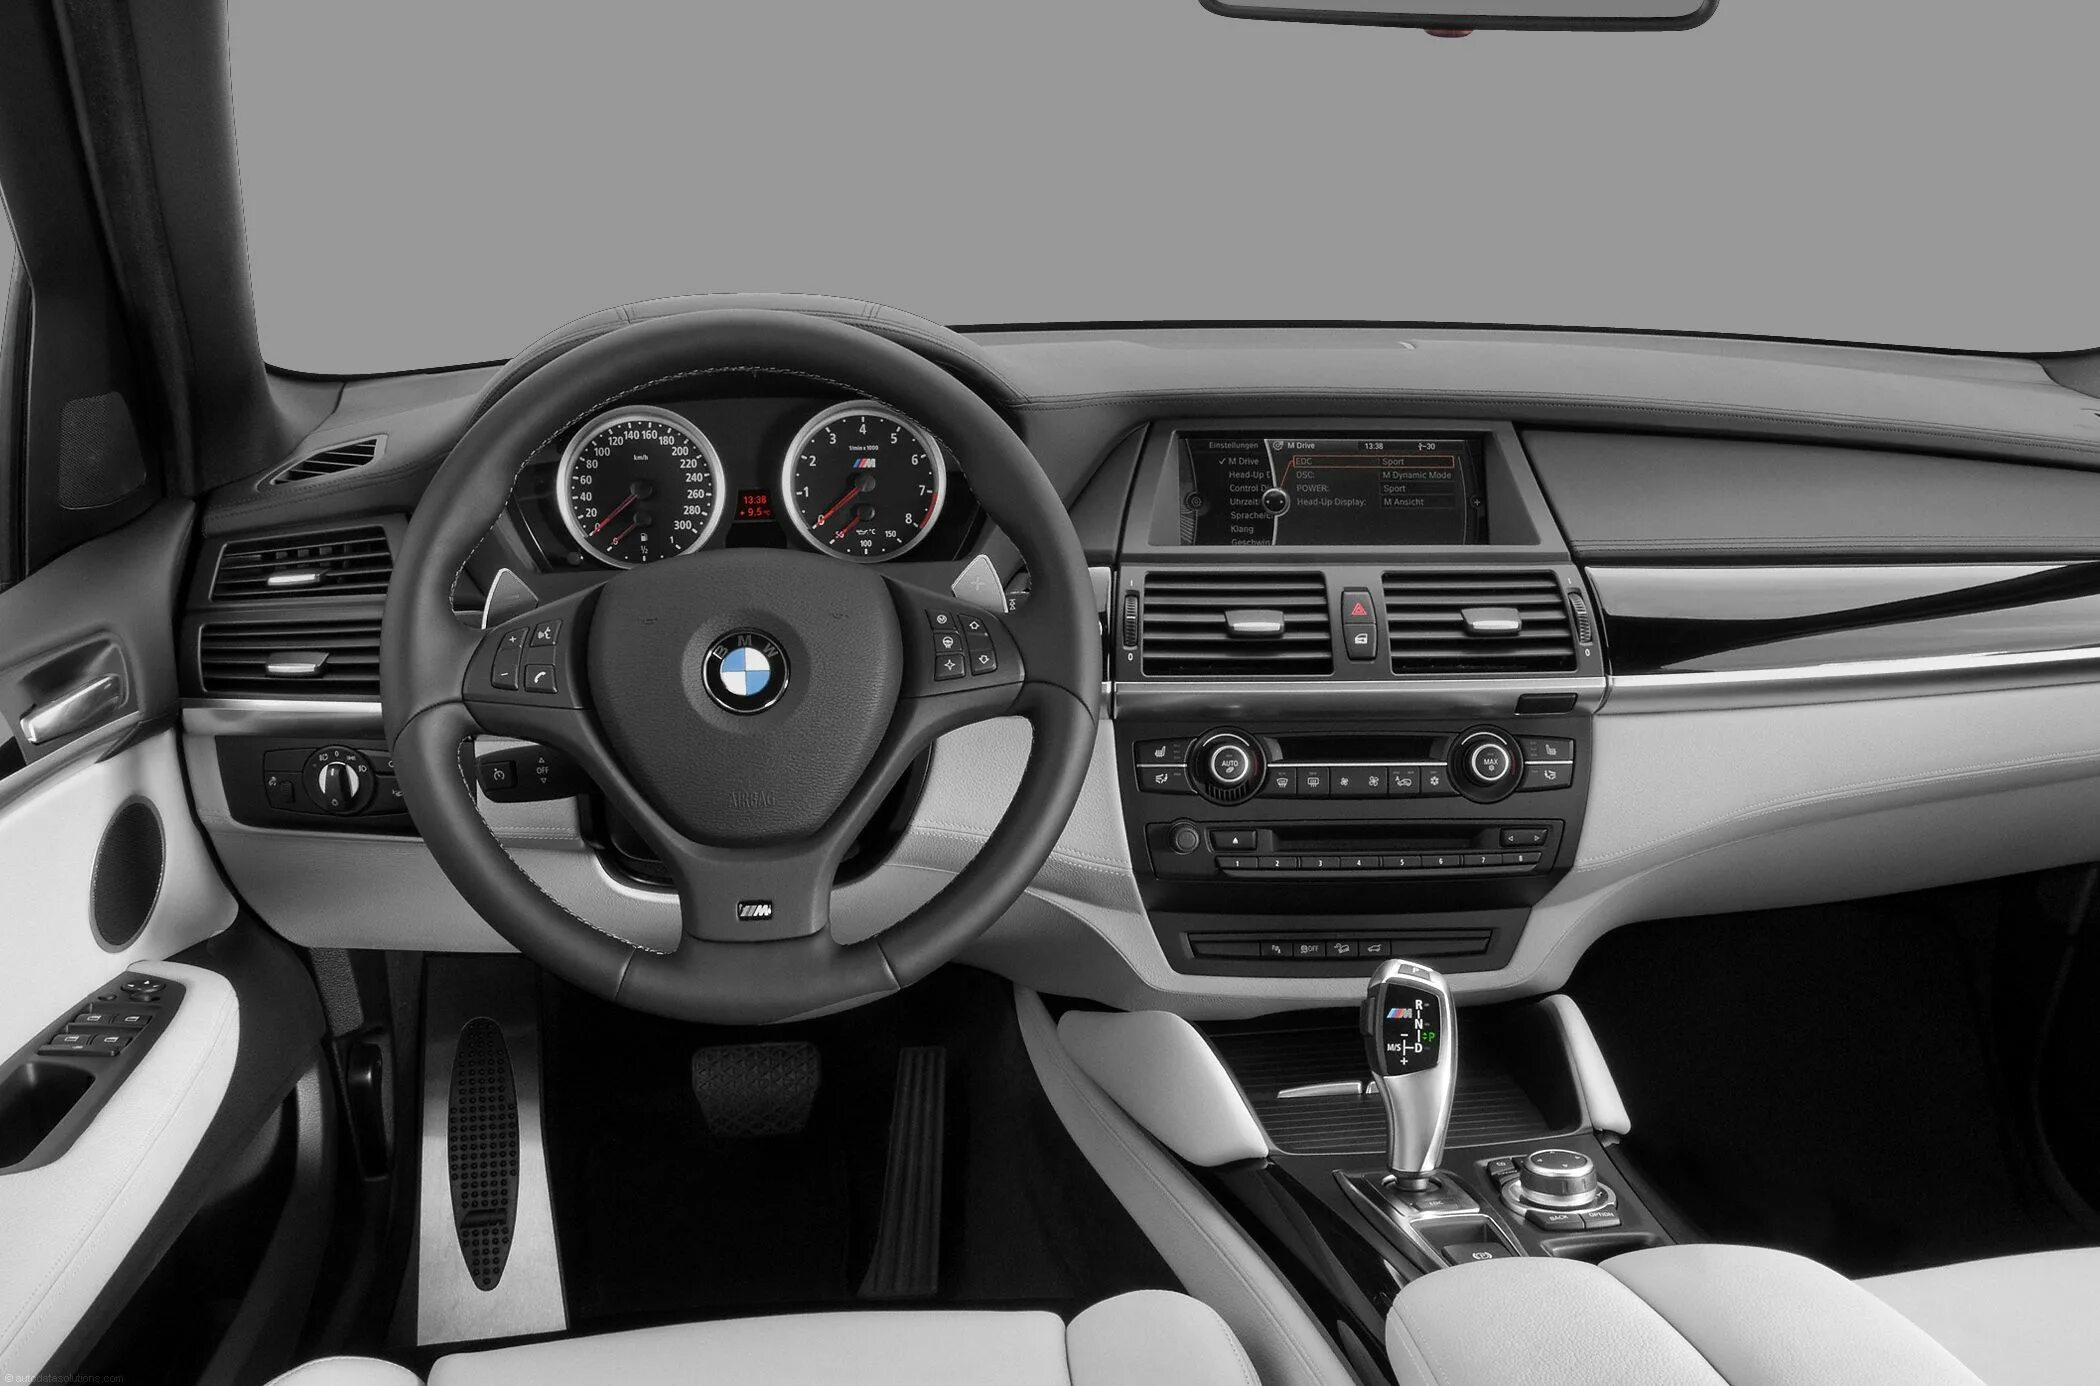 Bmw x5 комплектации. BMW x5 m5 2012. BMW x5m 2011. BMW x5m 2013. BMW x5 e90.